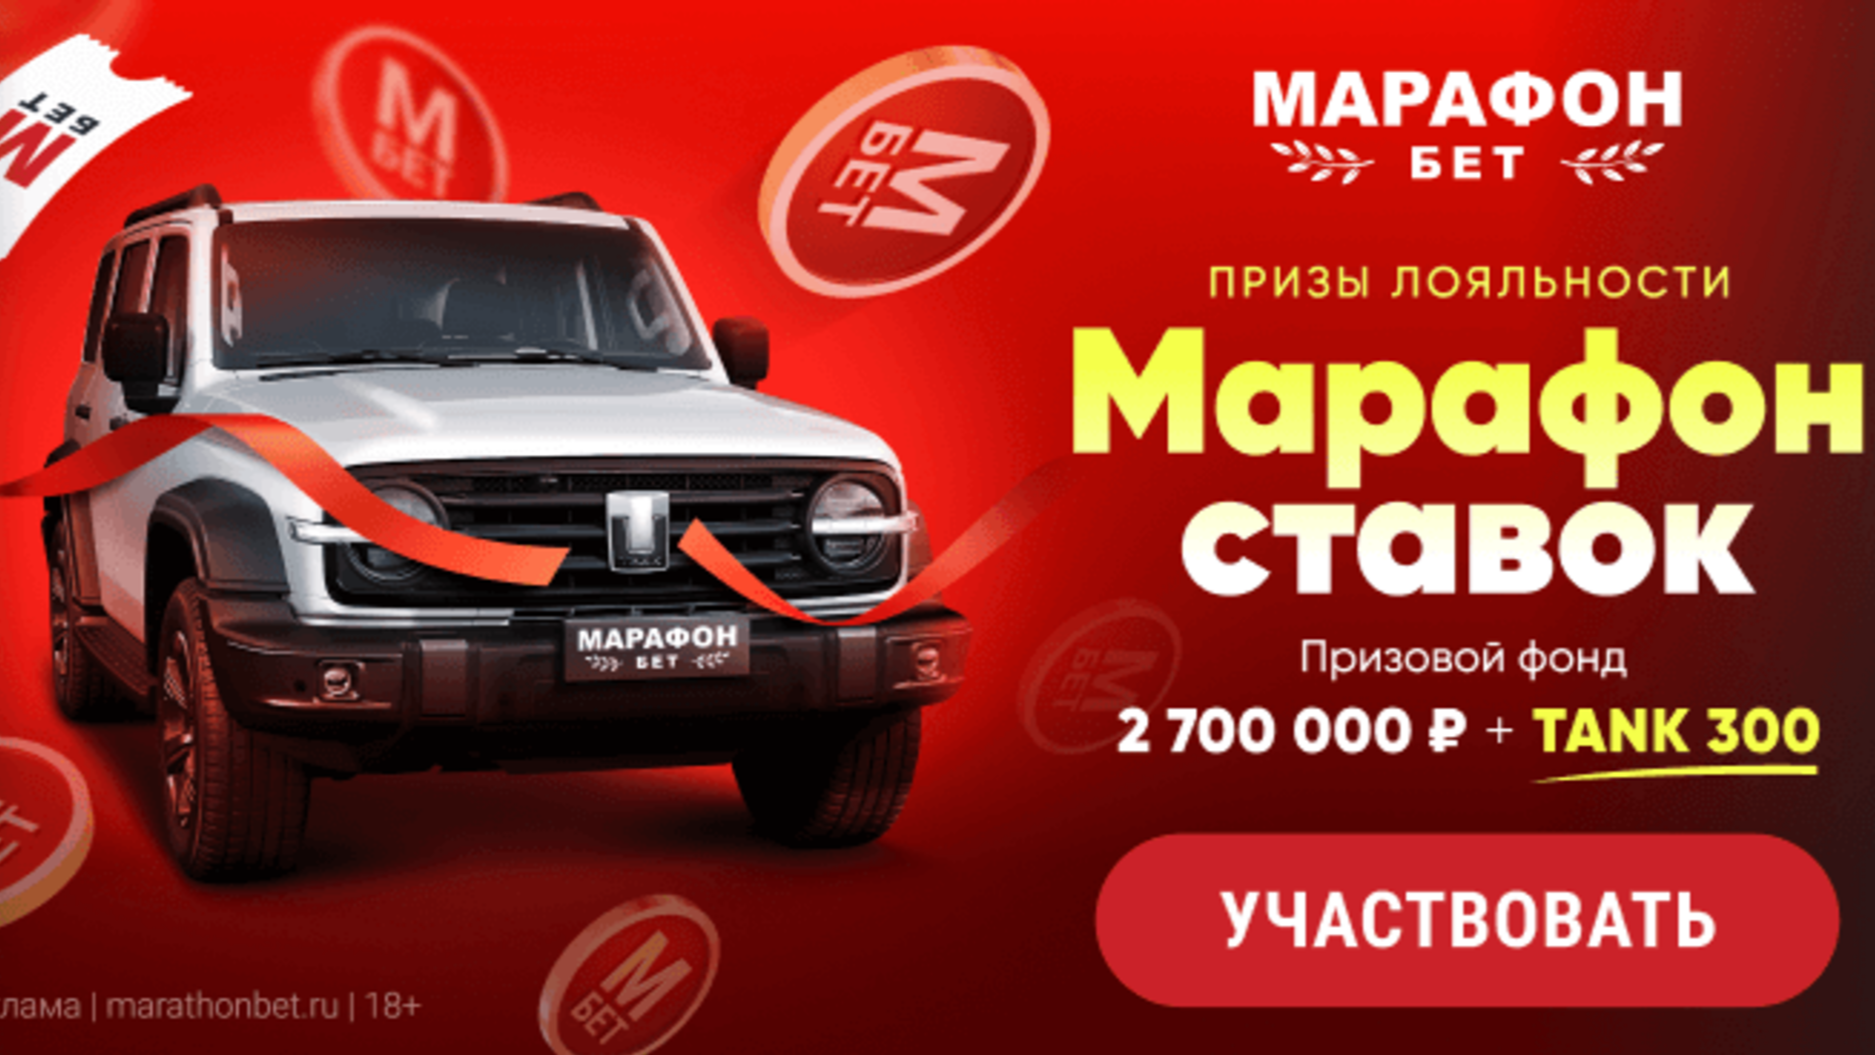 «Призы лояльности» в Марафон: розыгрыш авто и 200000 рублей